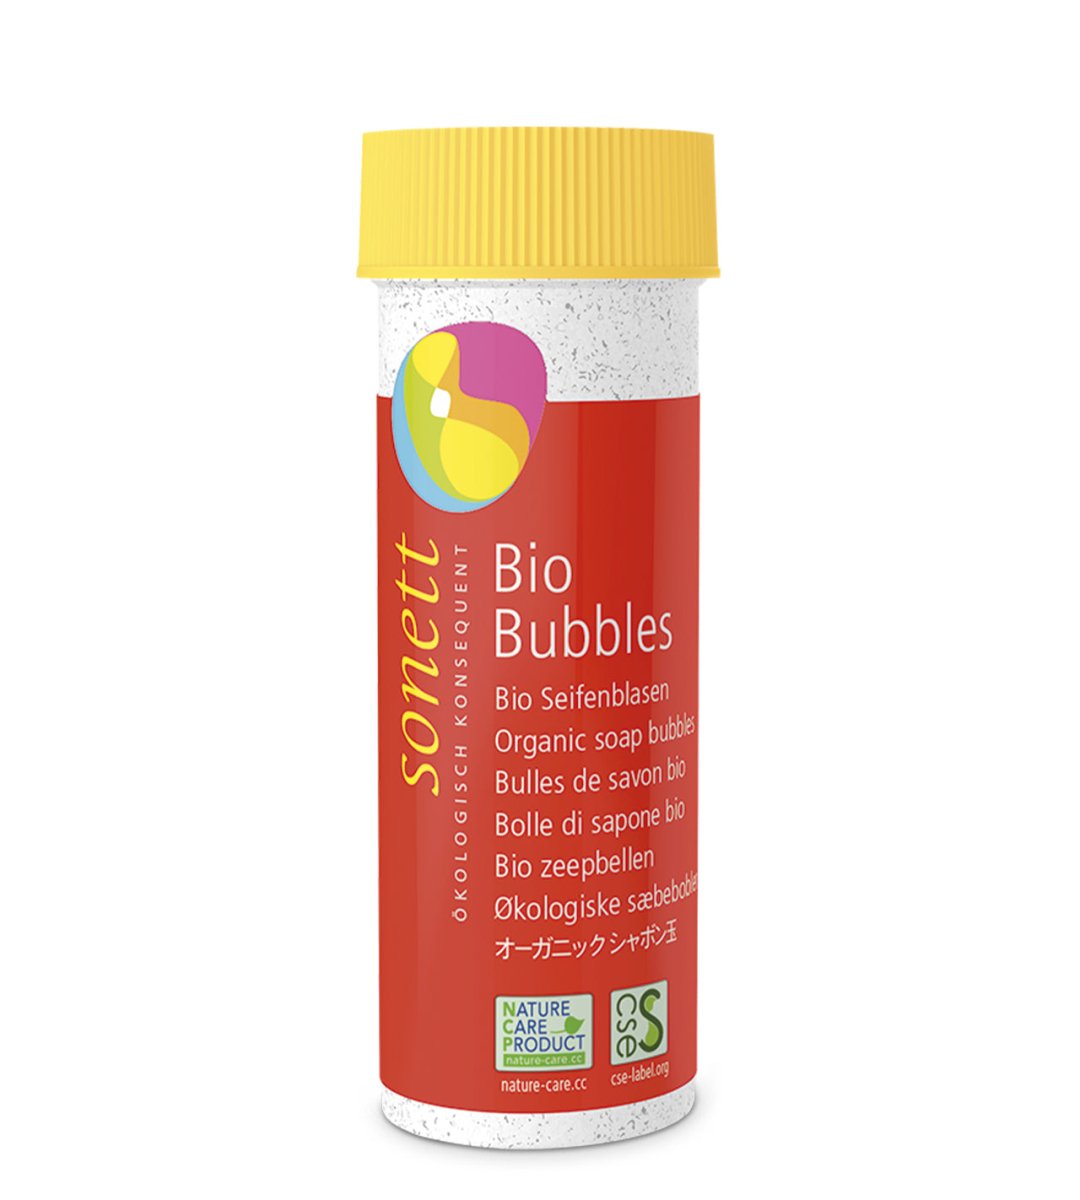 Sonett® | Bio-Bubbles, Seifenblasen | Döschen mit 3-fach Blasring | 45ml